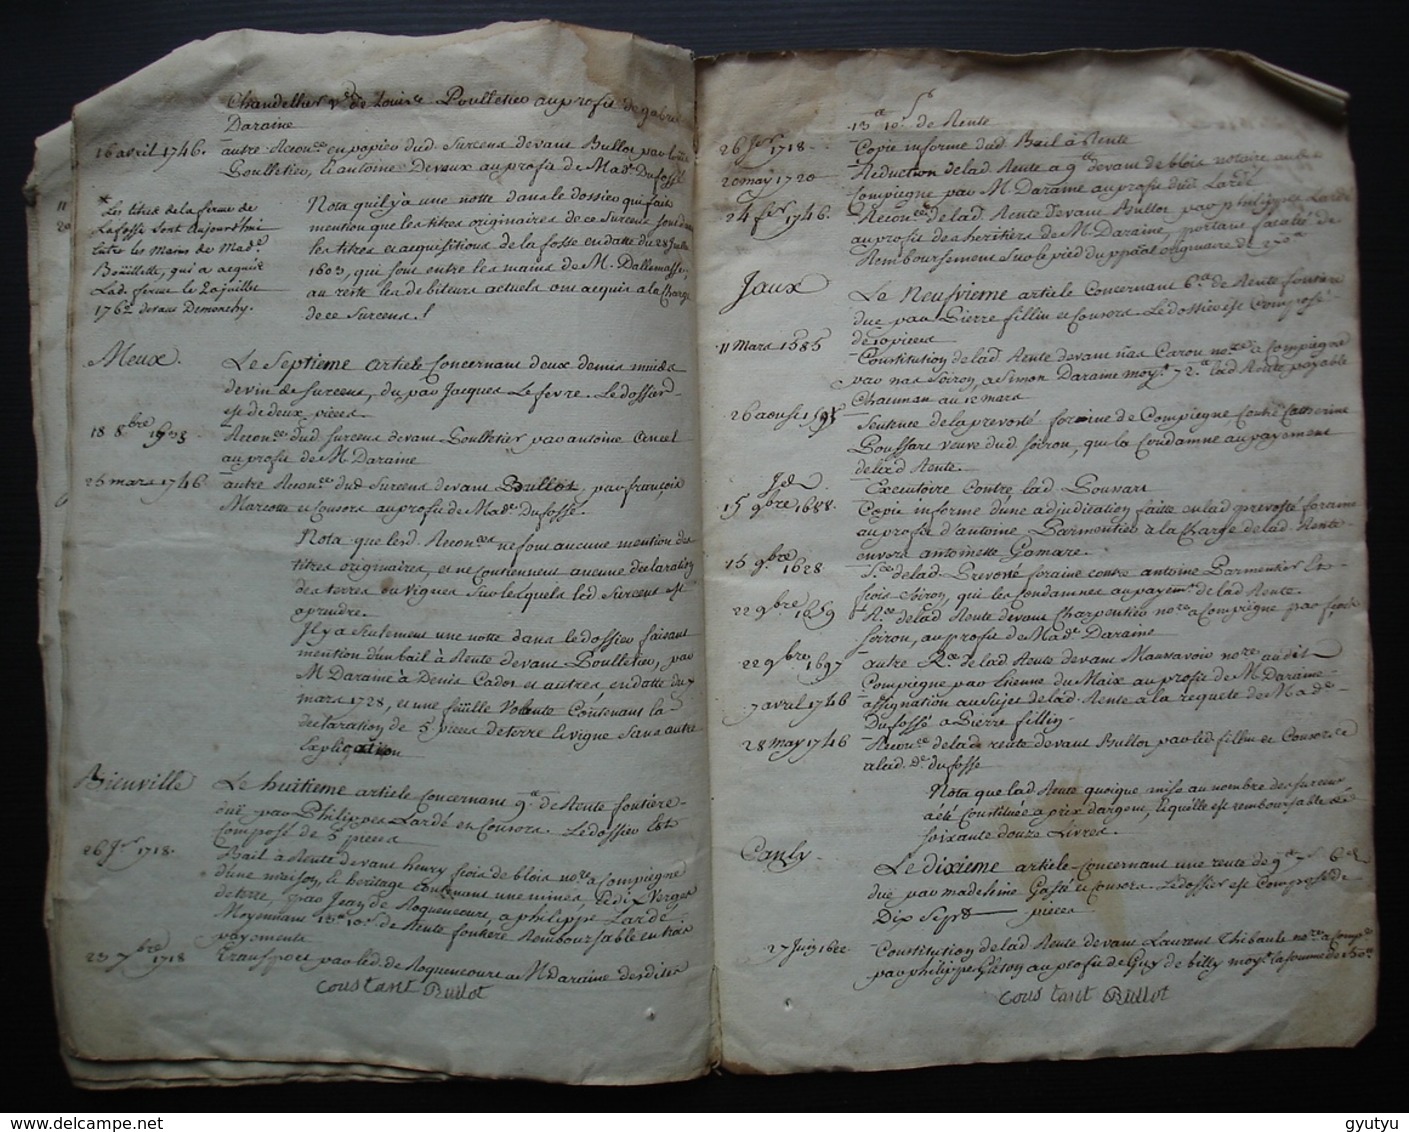 1765 Ferme de Mermont Crépy en Valois Oise Inventaire: titres Acquis par Bérenger de Duffossé, depuis 1485 16 pages